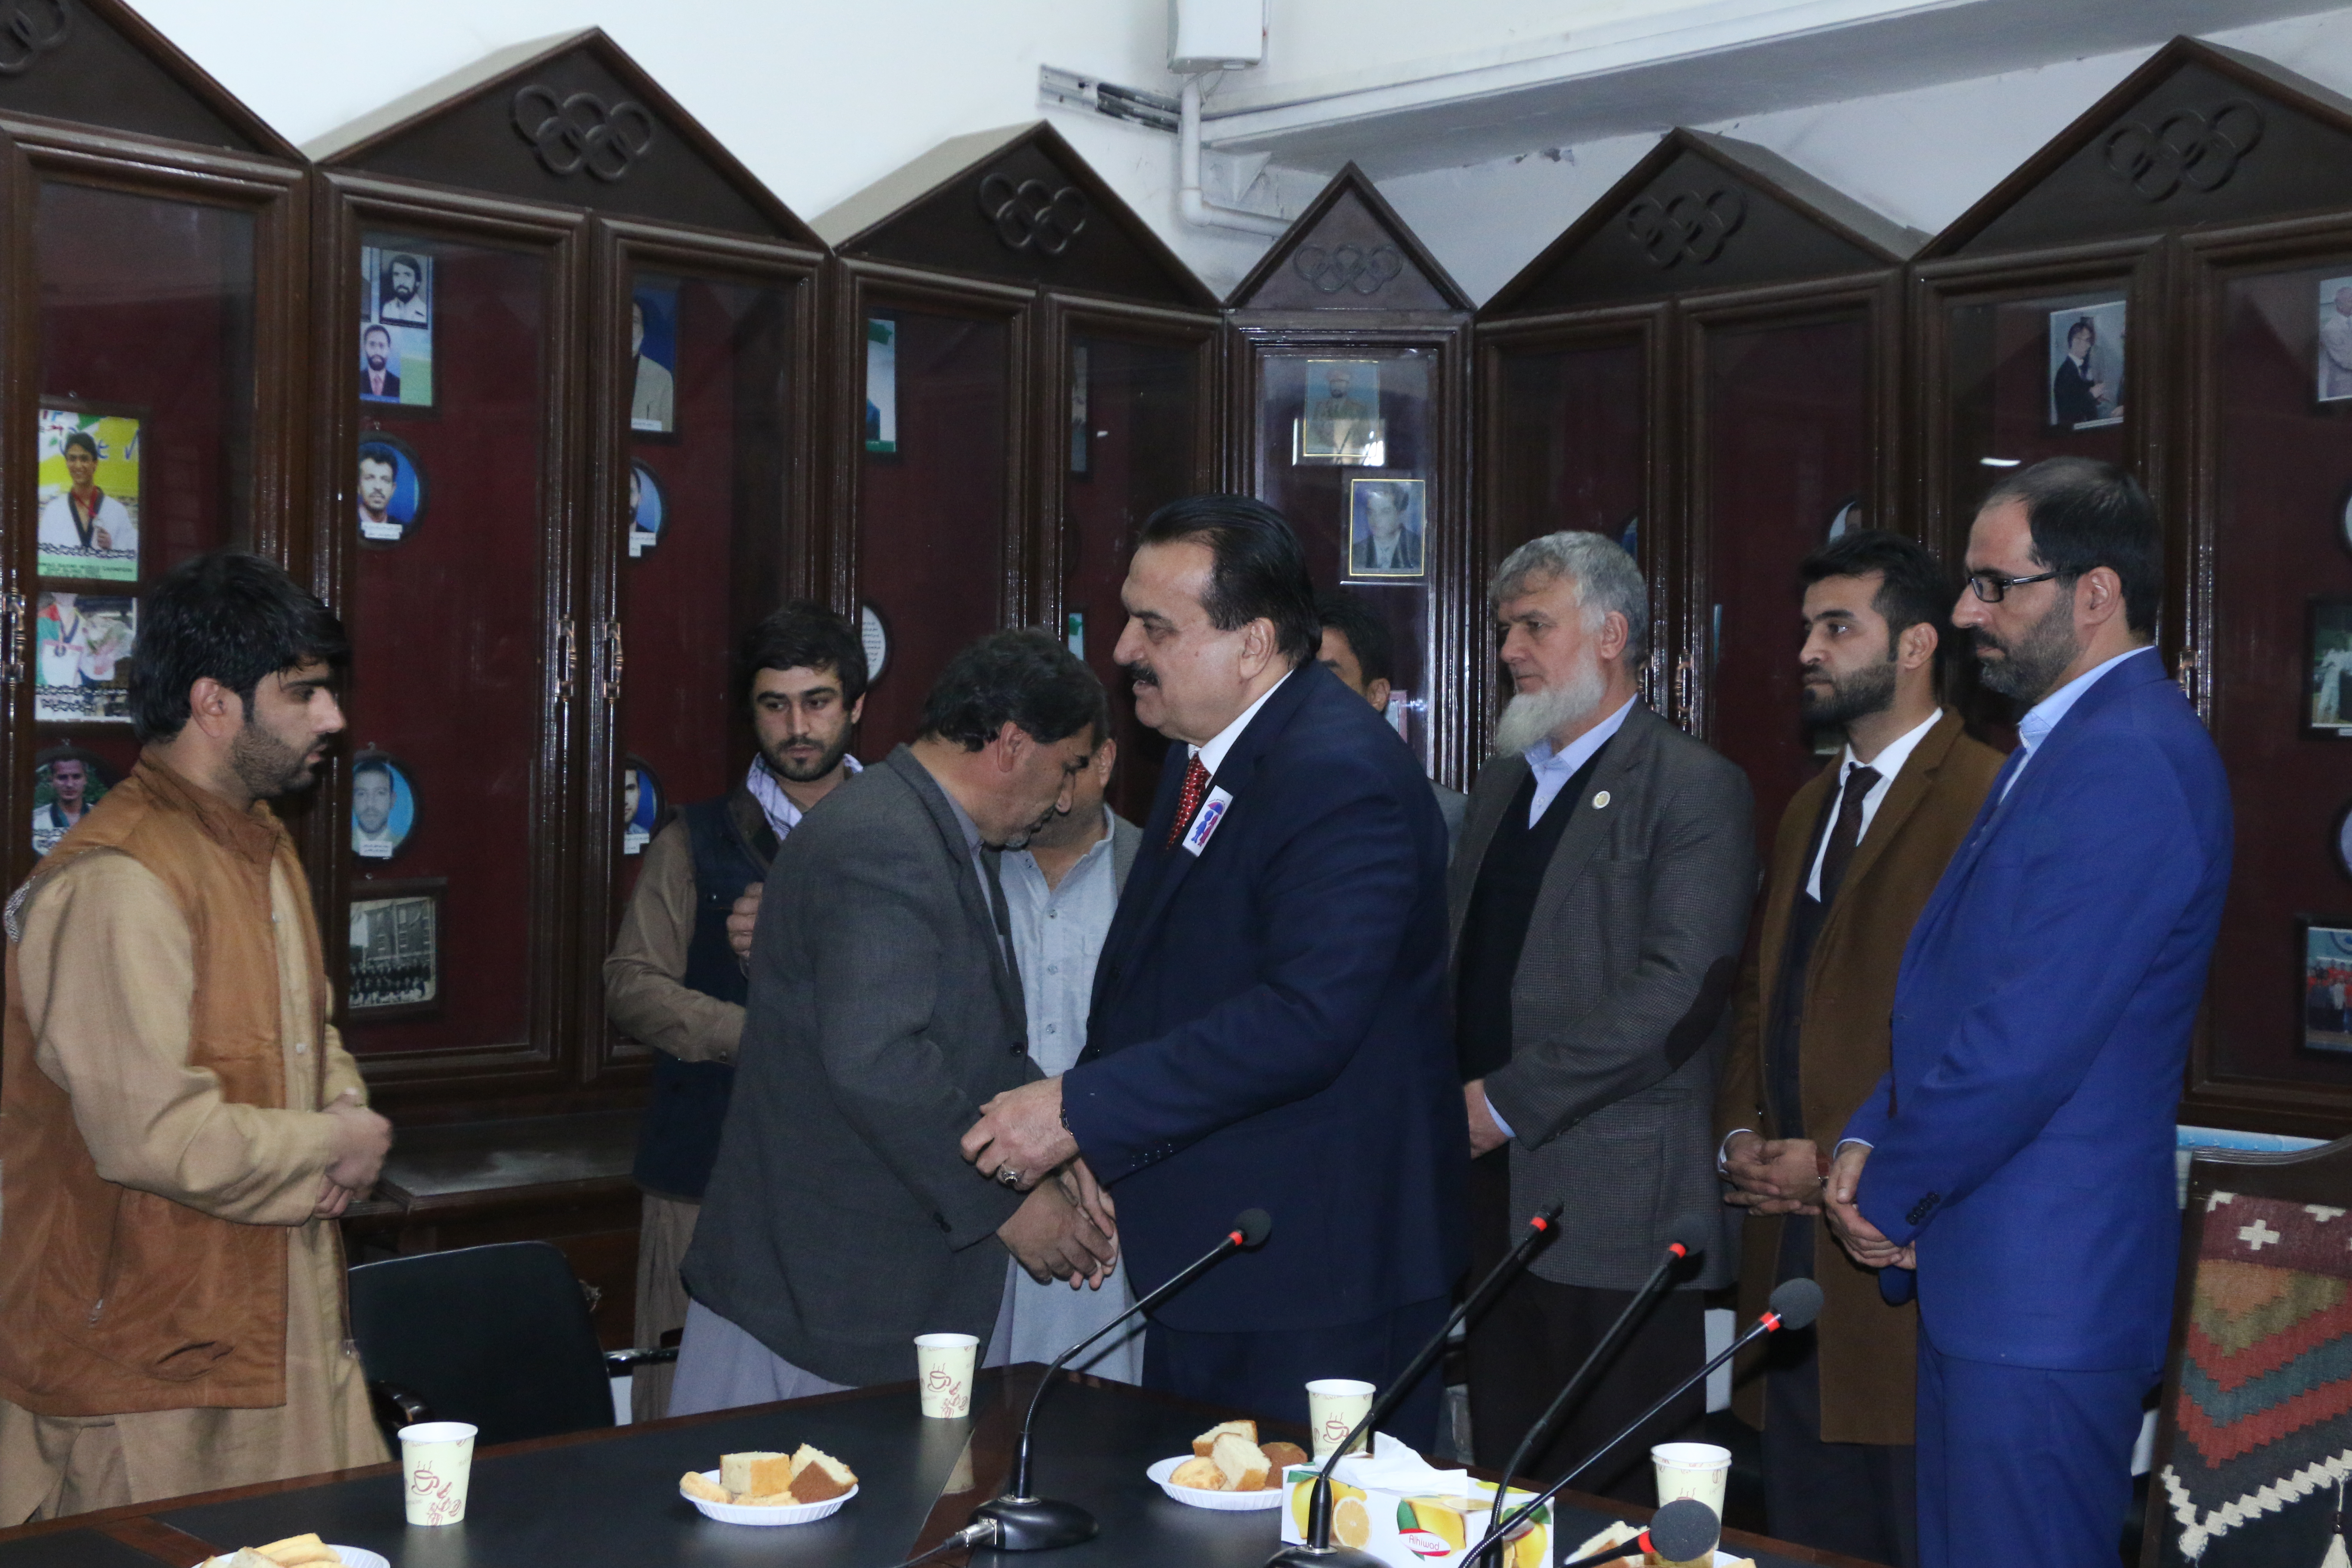 مراسم فاتحه خوانی و اتحاف دعا به روح امیر محمود محمودی رییس فدراسیون پاراالمپیک افغانستان